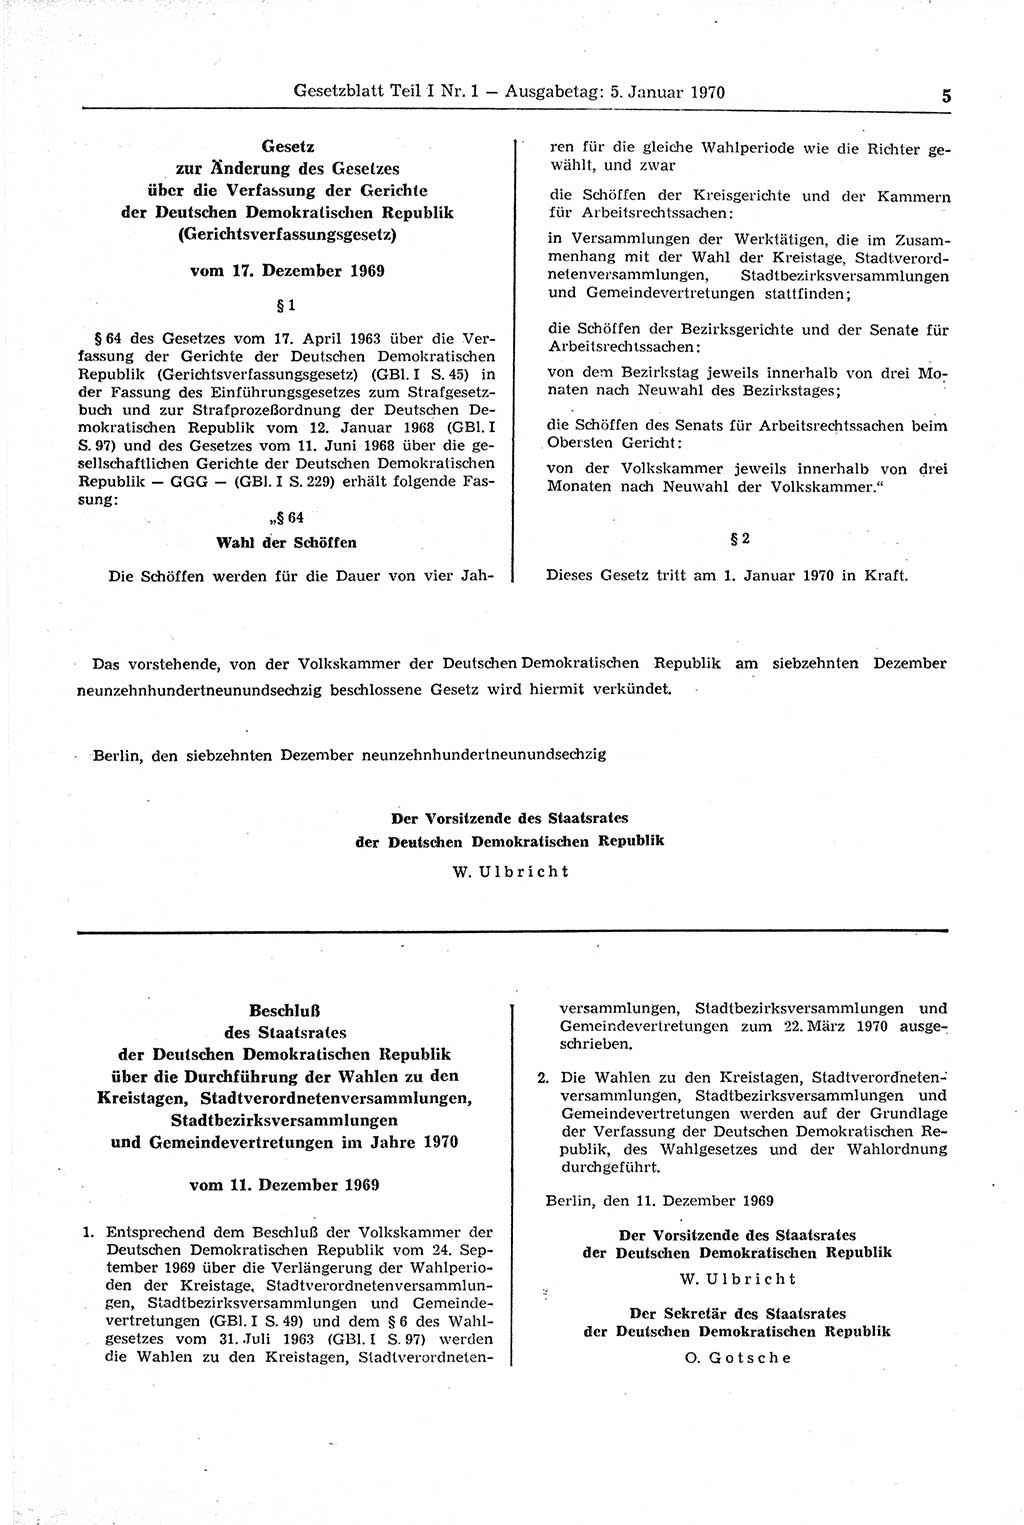 Gesetzblatt (GBl.) der Deutschen Demokratischen Republik (DDR) Teil Ⅰ 1970, Seite 5 (GBl. DDR Ⅰ 1970, S. 5)